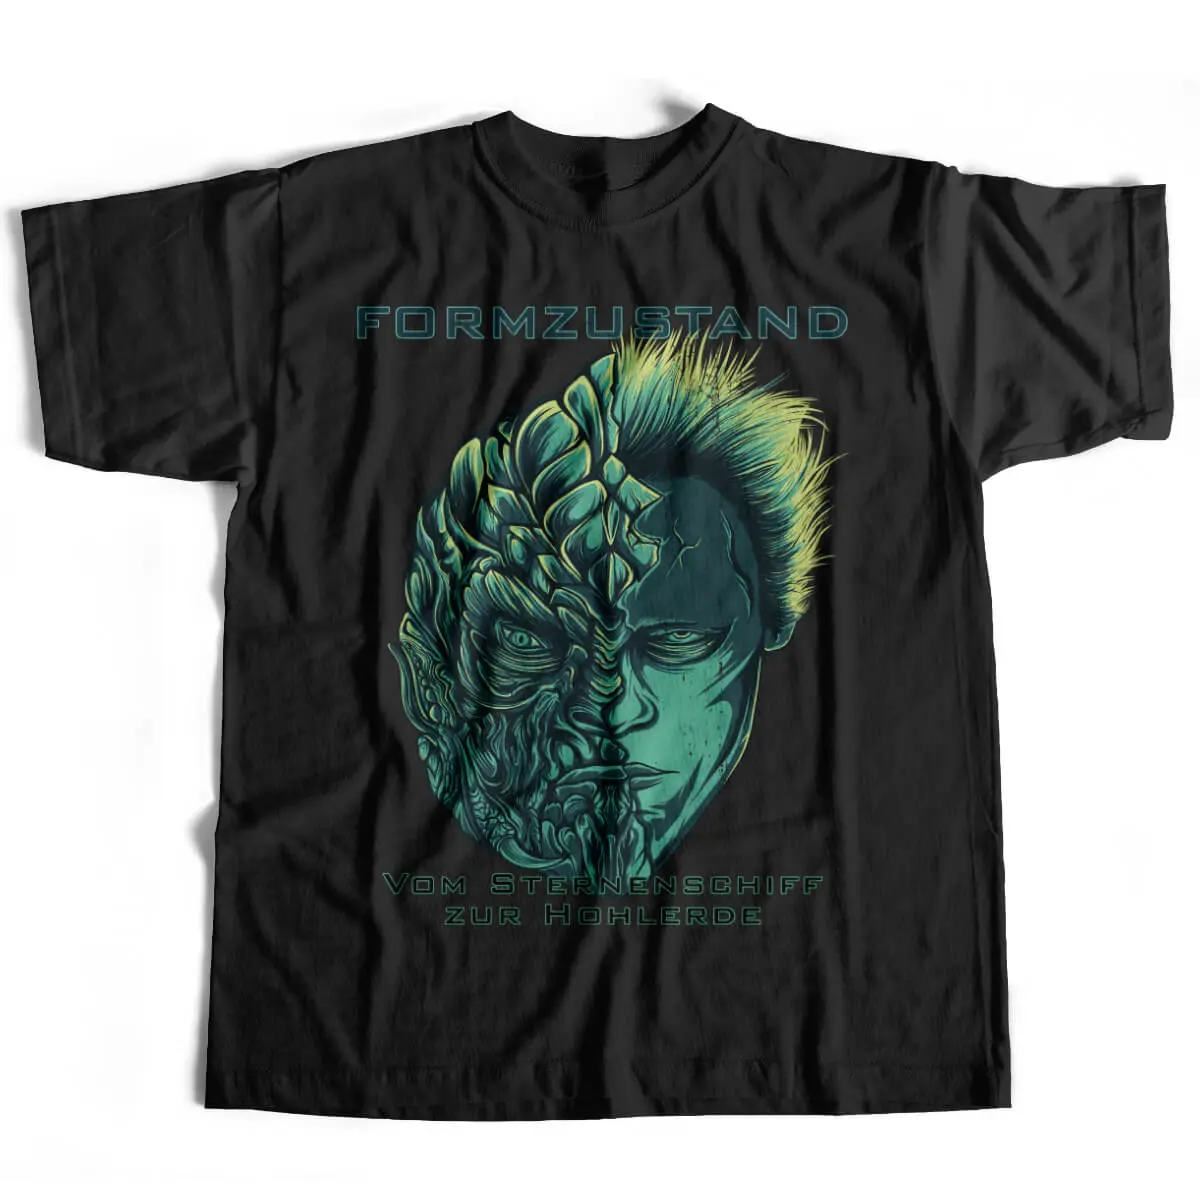 Formzustand - Vom Sternenschiff zur Hohlerde Synthwave T-Shirt